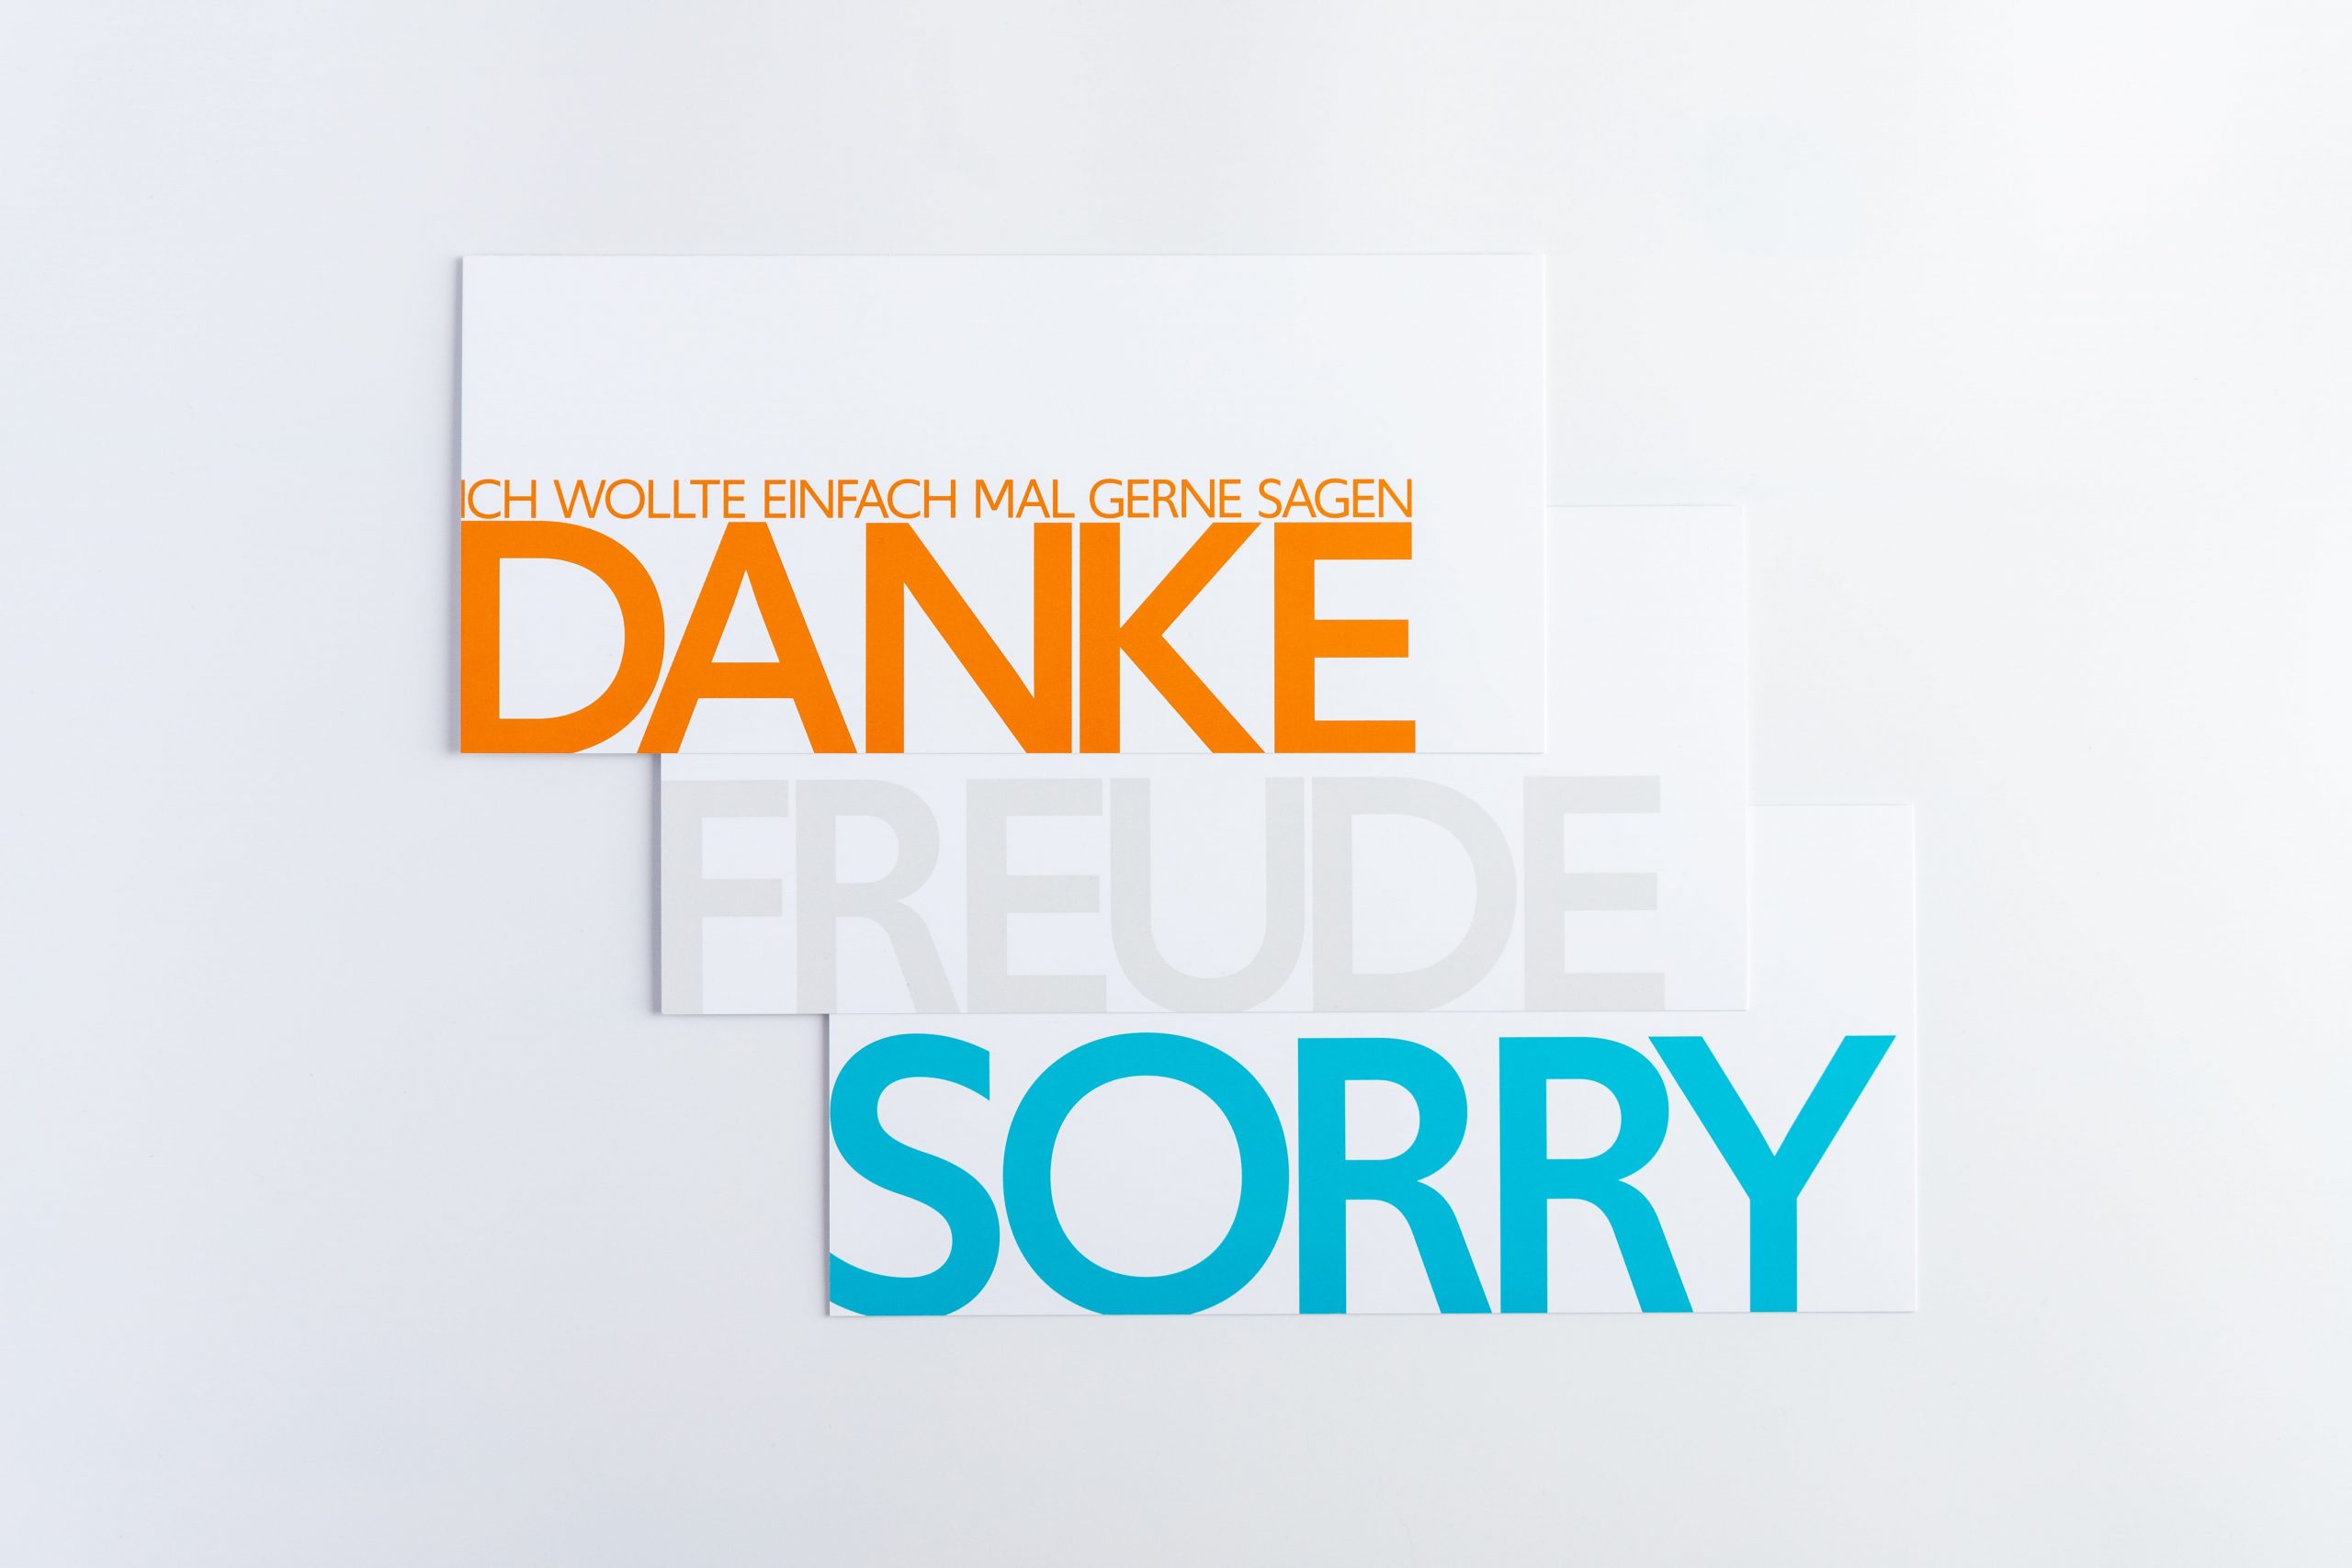 Grußkartenset "SOS" bestehend aus den Wörterkarten "DANKE", "FREUDE" und "SORRY"